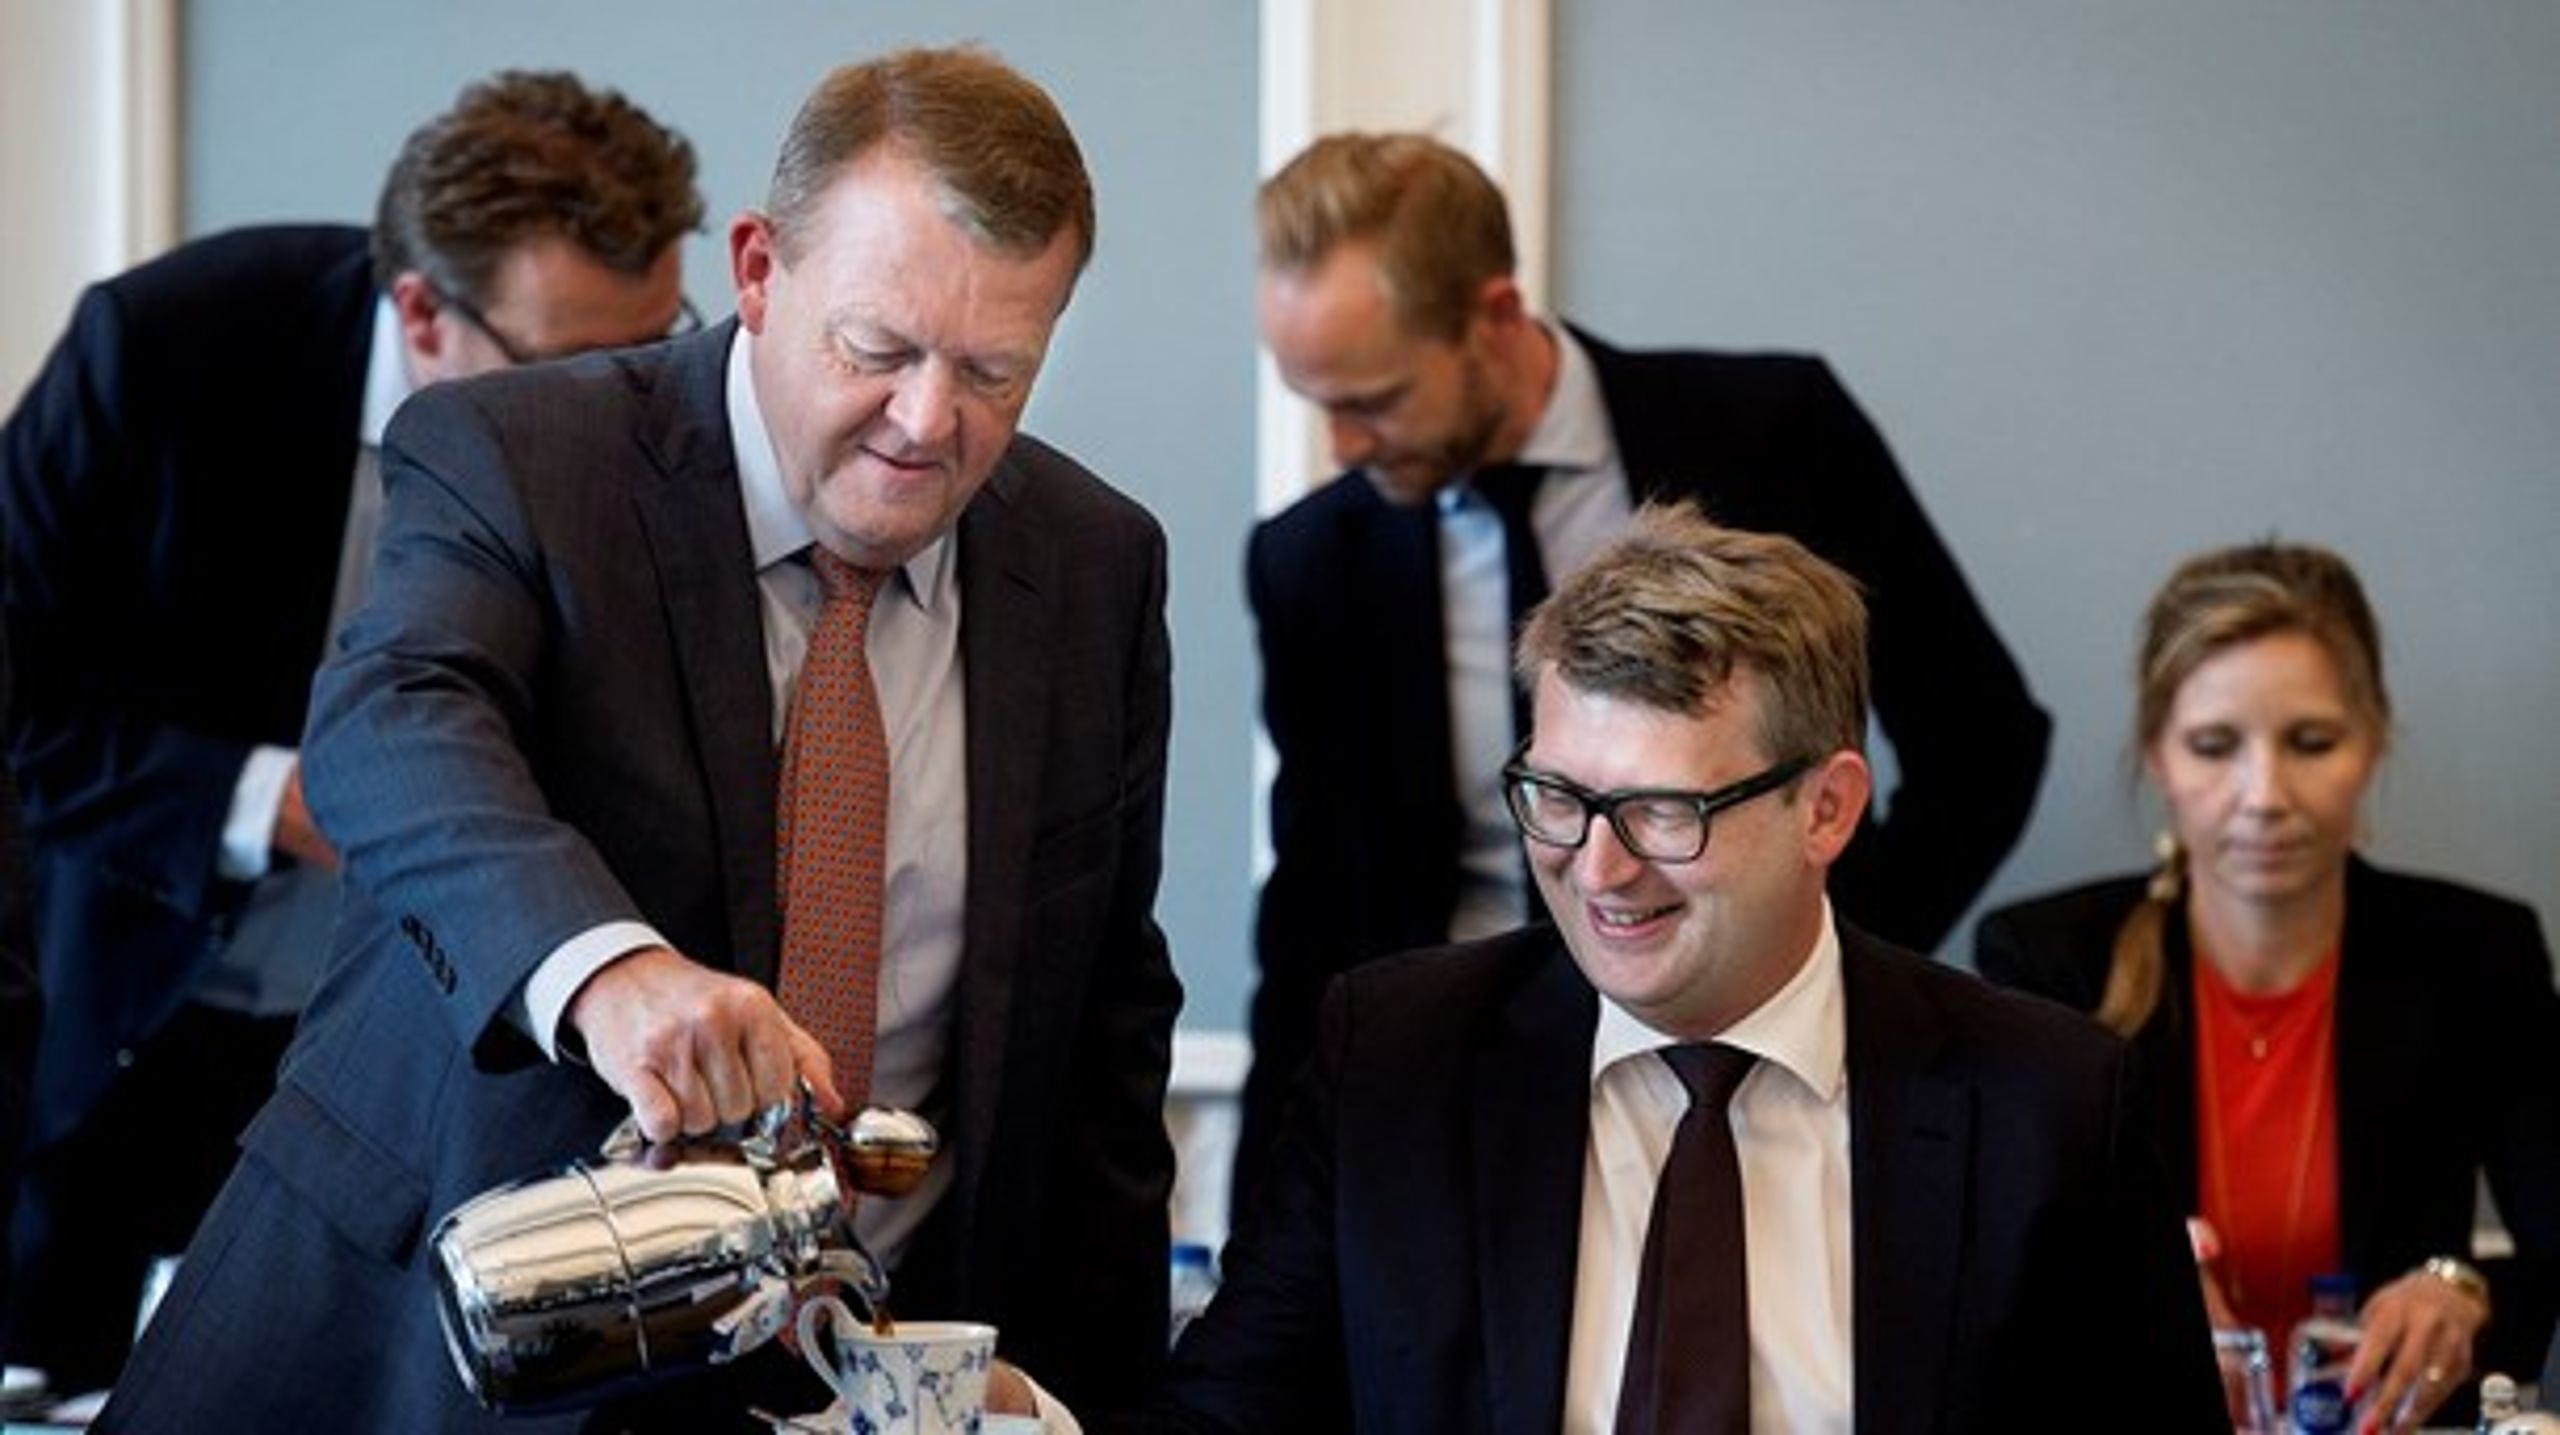 Statsminister Lars Løkke Rasmussen (V) og beskæftigelsesminister Troels Lund Poulsen (V) arbejder i disse dage på at lande den sidste aftale inden valget.&nbsp;